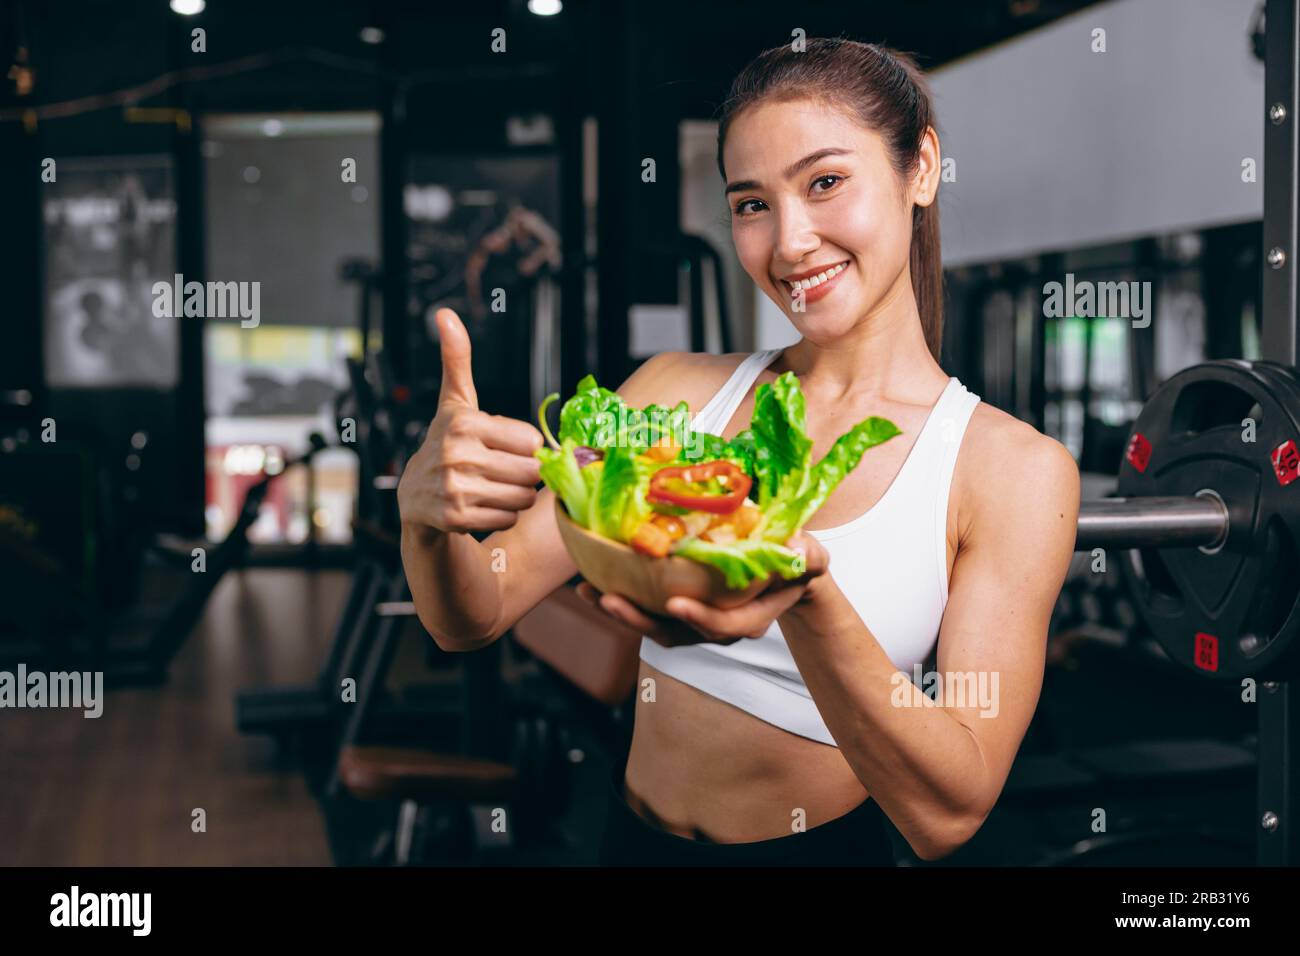 giovane donna sportiva asiatica in fitness club sportivo con cibo sano mangiare verdure mescolare insalata dieta a basso contenuto calorico Foto Stock